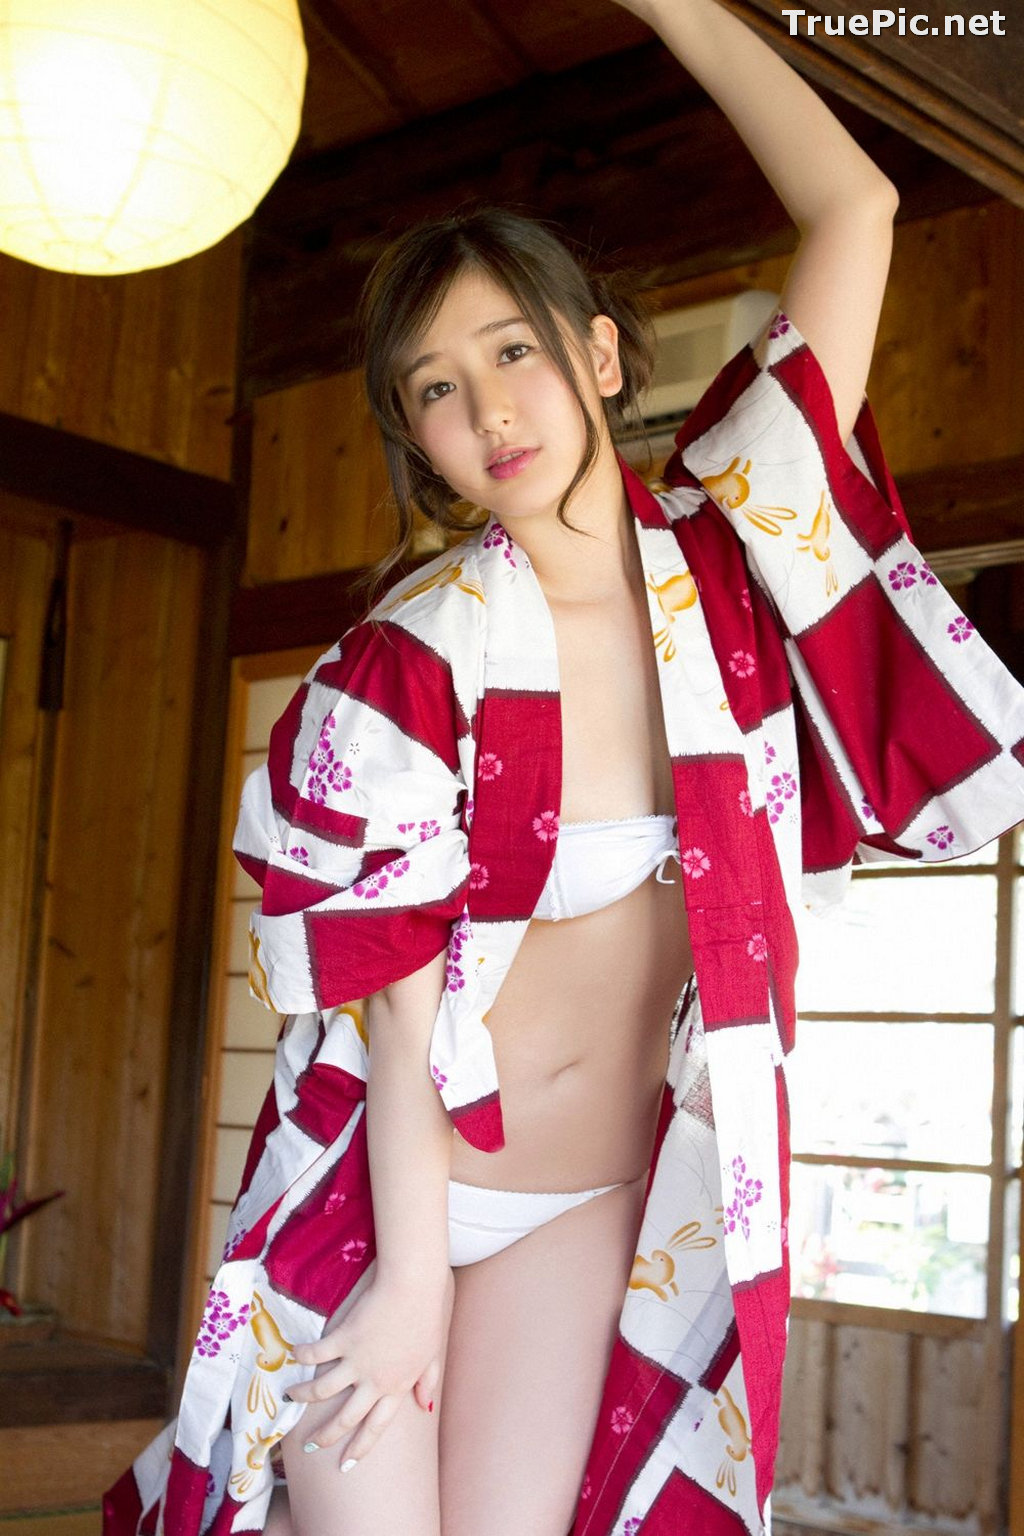 Image [YS Web] Vol.561 - Japanese Actress and Gravure Idol - Murakami Yuri - TruePic.net - Picture-13